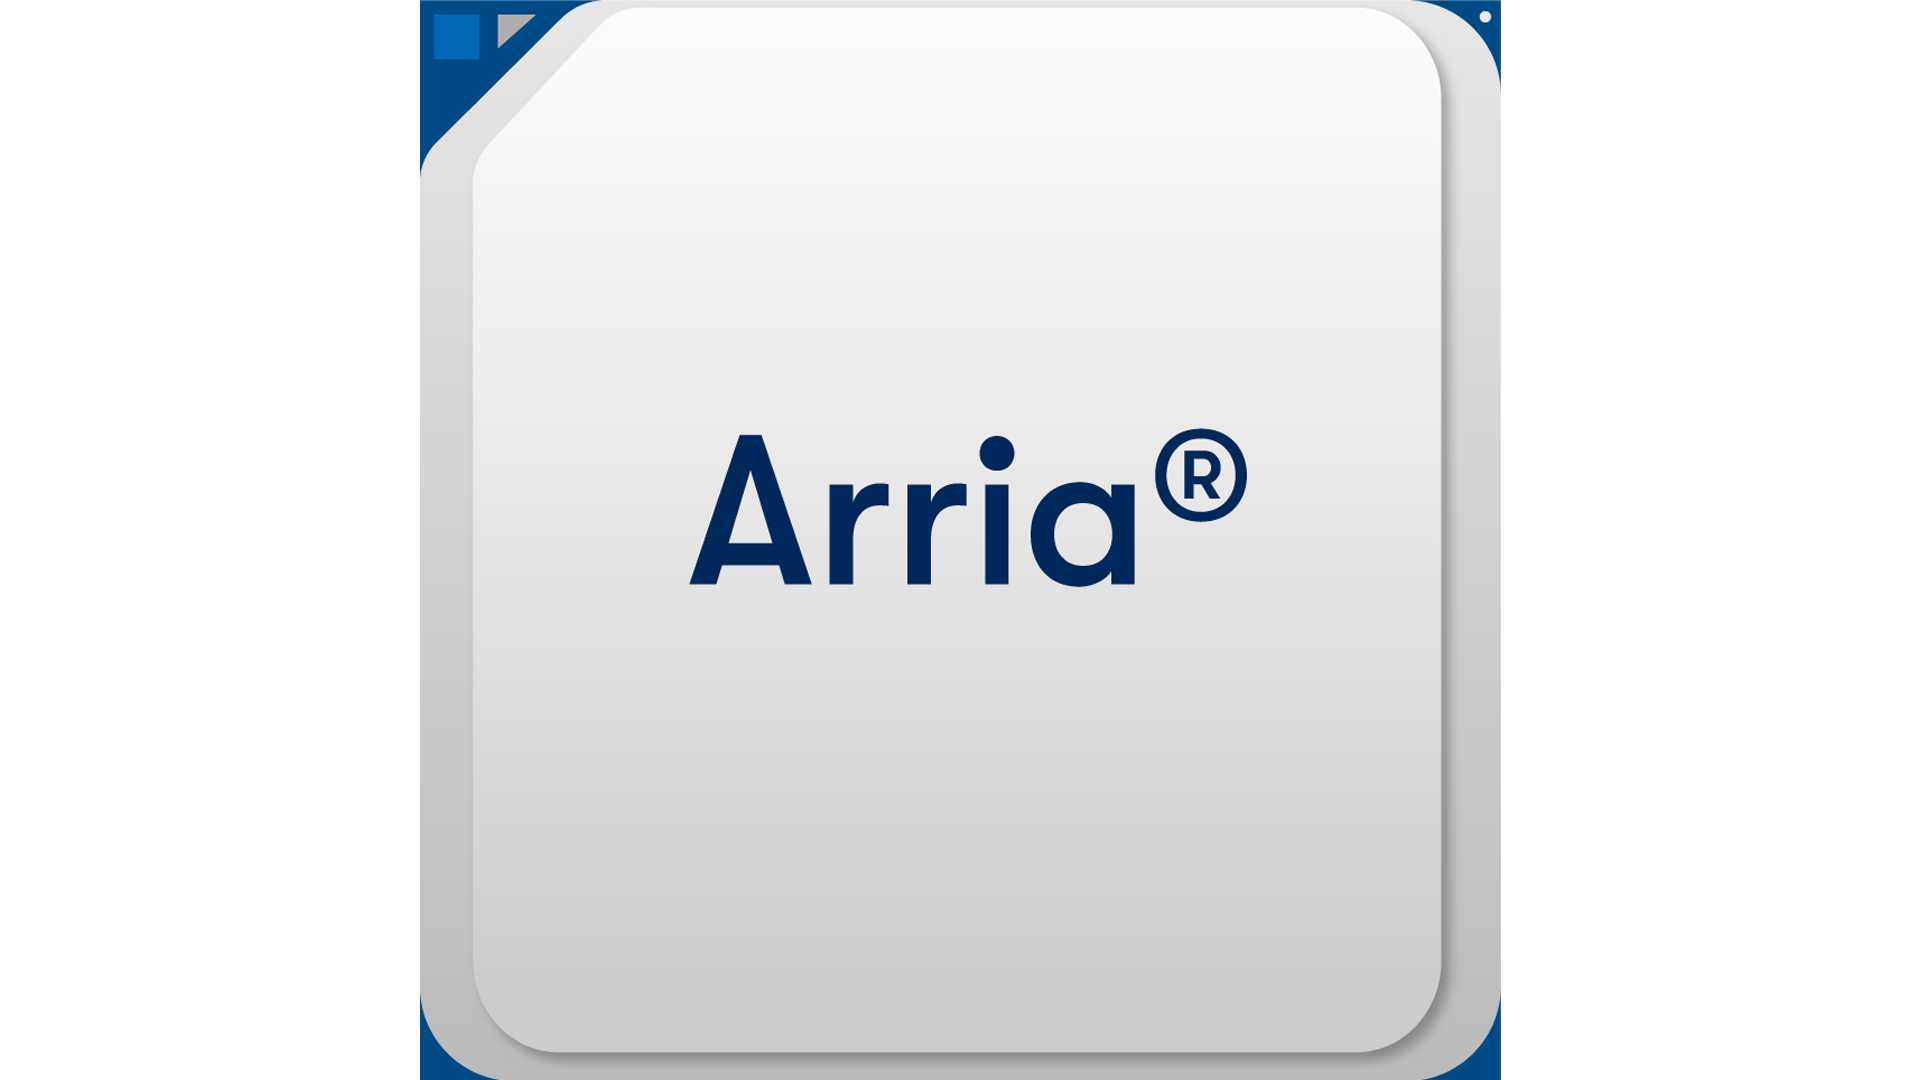 Arria® V GX FPGA